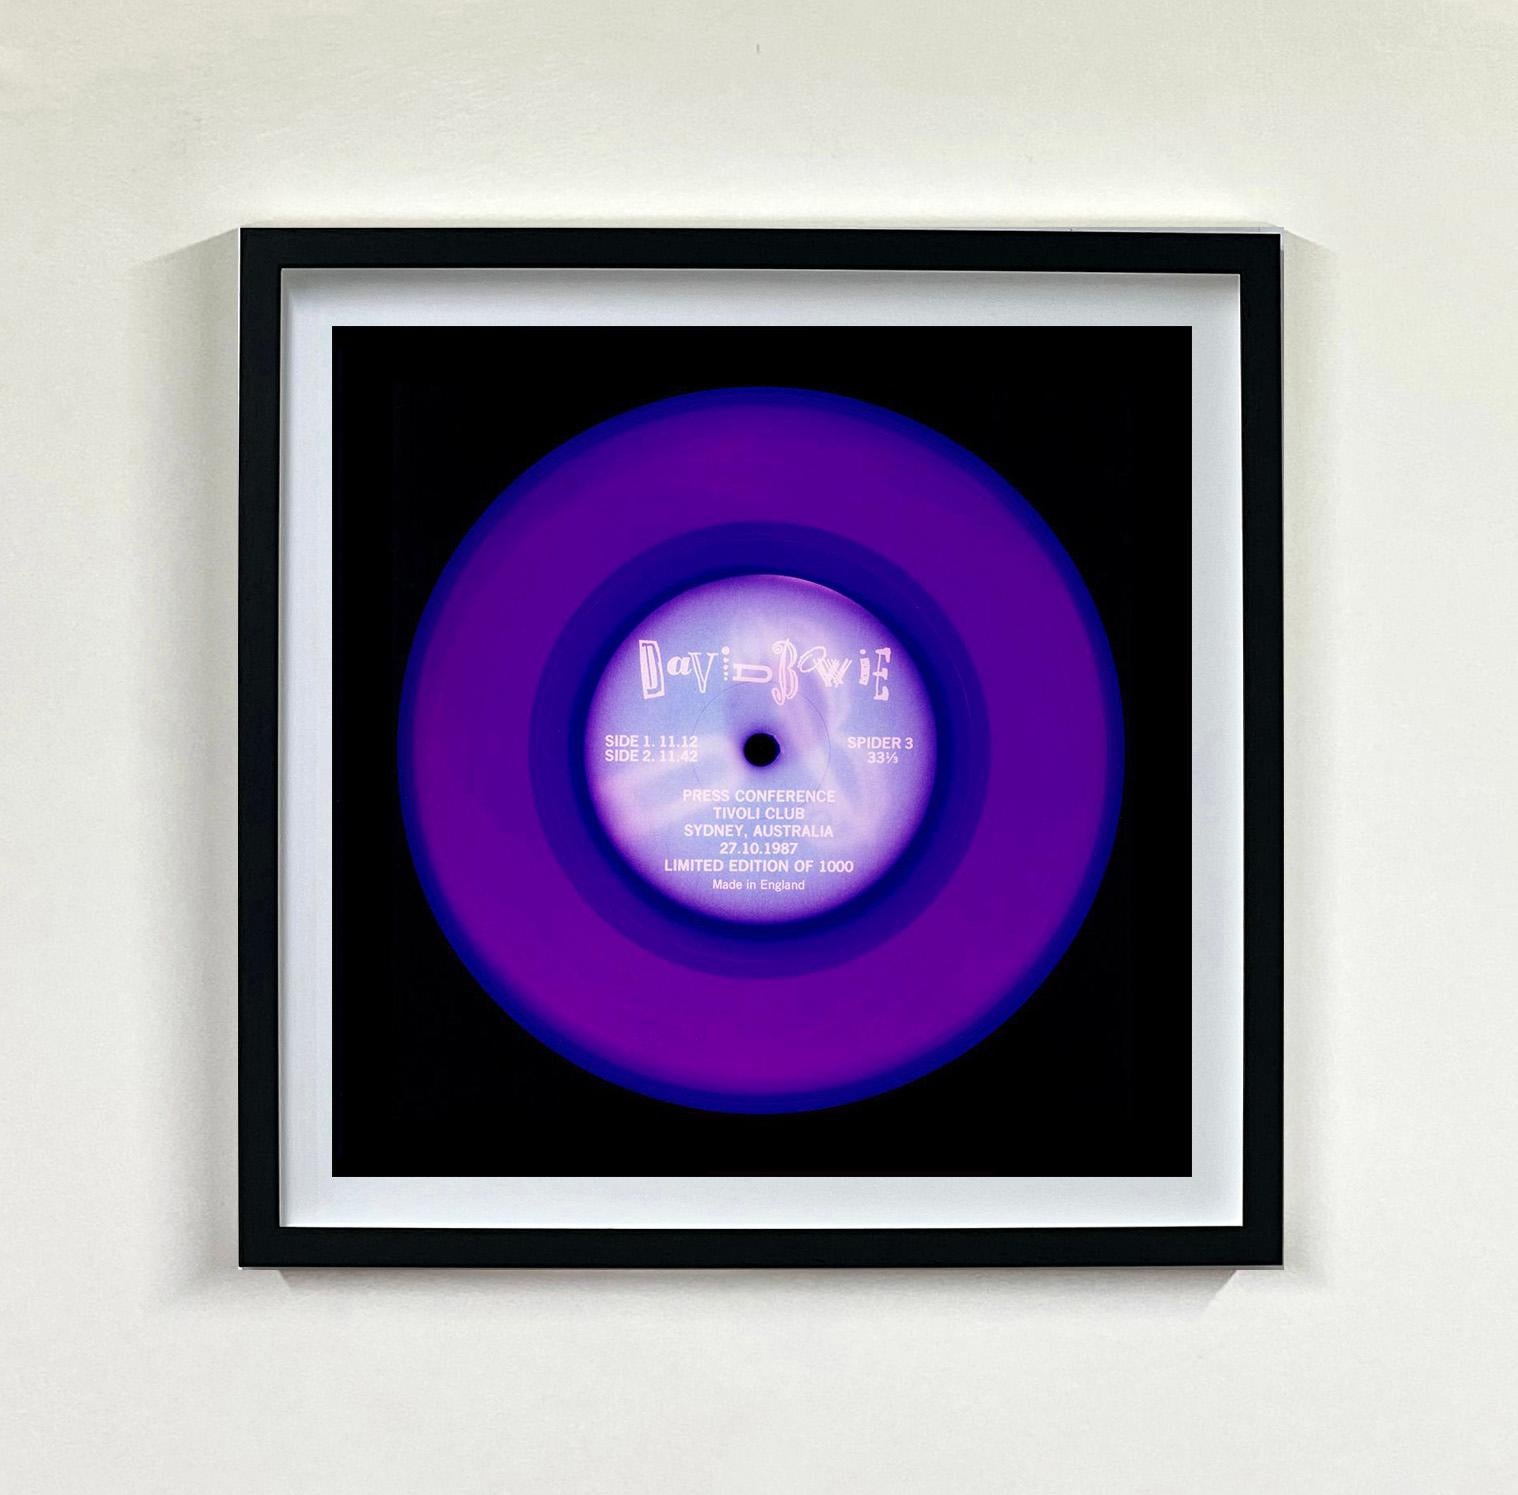 Heidler & Heeps Vinyl Collection Twelve Piece Multicolor Installation.
Die renommierten zeitgenössischen Fotografen Richard Heeps und Natasha Heidler haben für diese wunderschöne, faszinierende Kollektion zusammengearbeitet. Ein Fest der